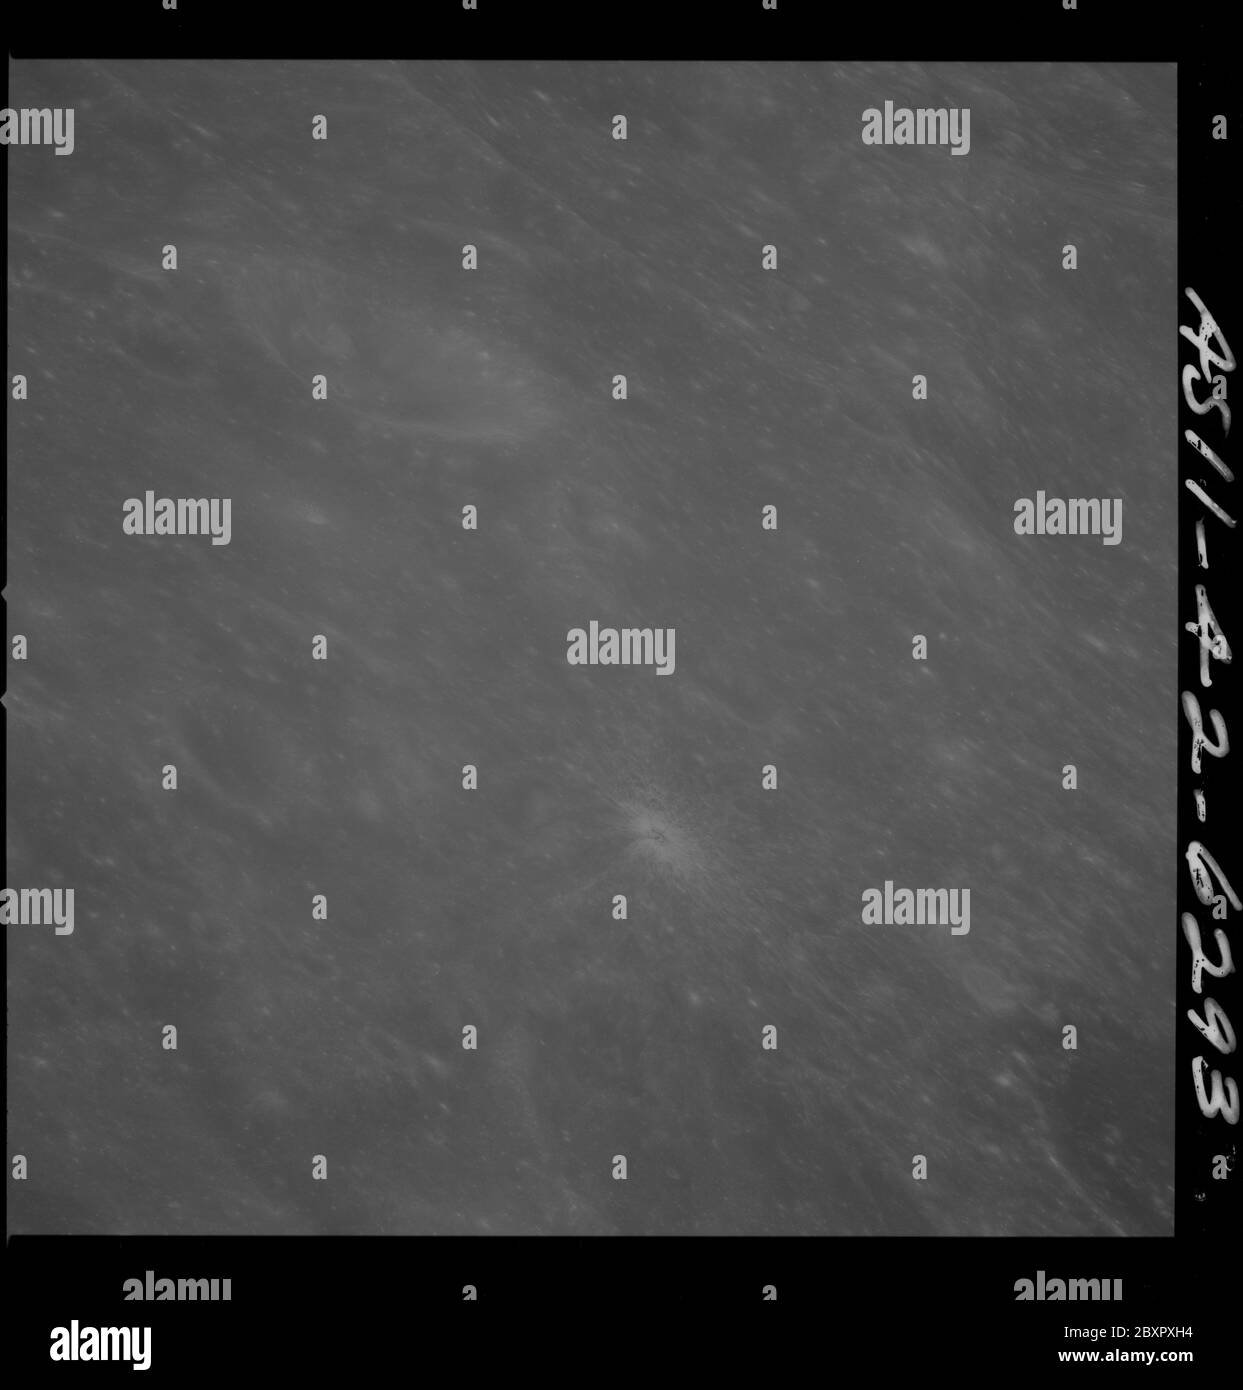 AS11-42-6293 - Apollo 11 - Apollo 11 Missionsbild - Westrand des Kraters 226; Umfang und Inhalt: Die Originaldatenbank beschreibt dies als: Beschreibung: Mondansicht, Westrand des Kraters 226, kleiner heller, durchstrahlter Krater. Krater 226 wird offiziell Sharonov genannt. Bild aufgenommen vom Command and Service Module (CSM) während der Apollo 11 Mission während einer nahe kreisförmigen Mondbahn. Original Film Magazin wurde mit U. Film Typ: 3400 Panatomic-X Schwarz/Weiß aufgenommen mit einem 250mm Objektiv. Der Bildmaßstab beträgt ca. 1:510,000. Der Hauptpunkt Breitengrad ist 5.5 Grad Süd, Längengrad 91.5 Grad Stockfoto